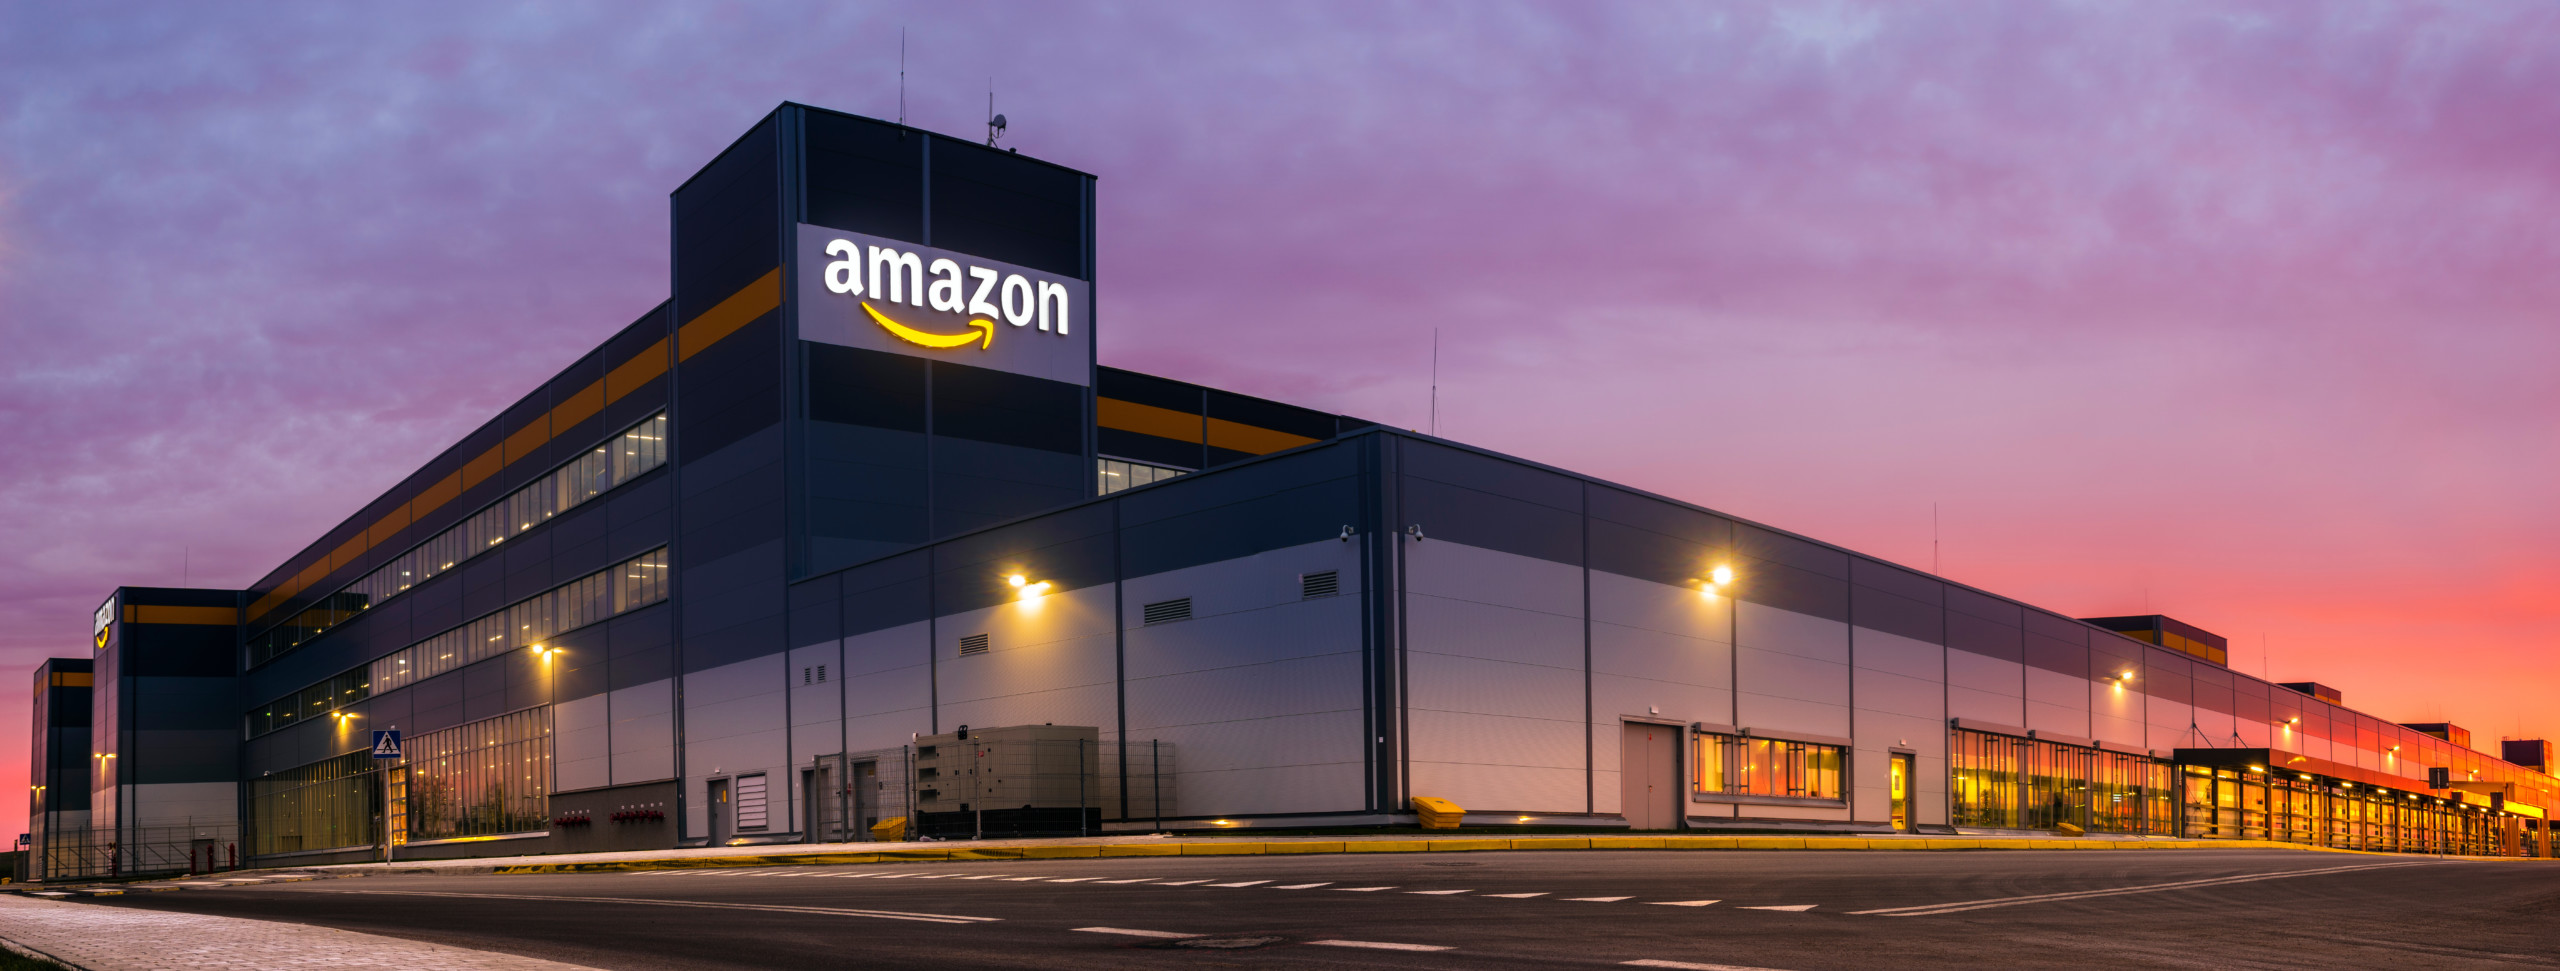 Rezession und Kostenexplosion trifft auch Amazon - Aktie bricht um 20% ein